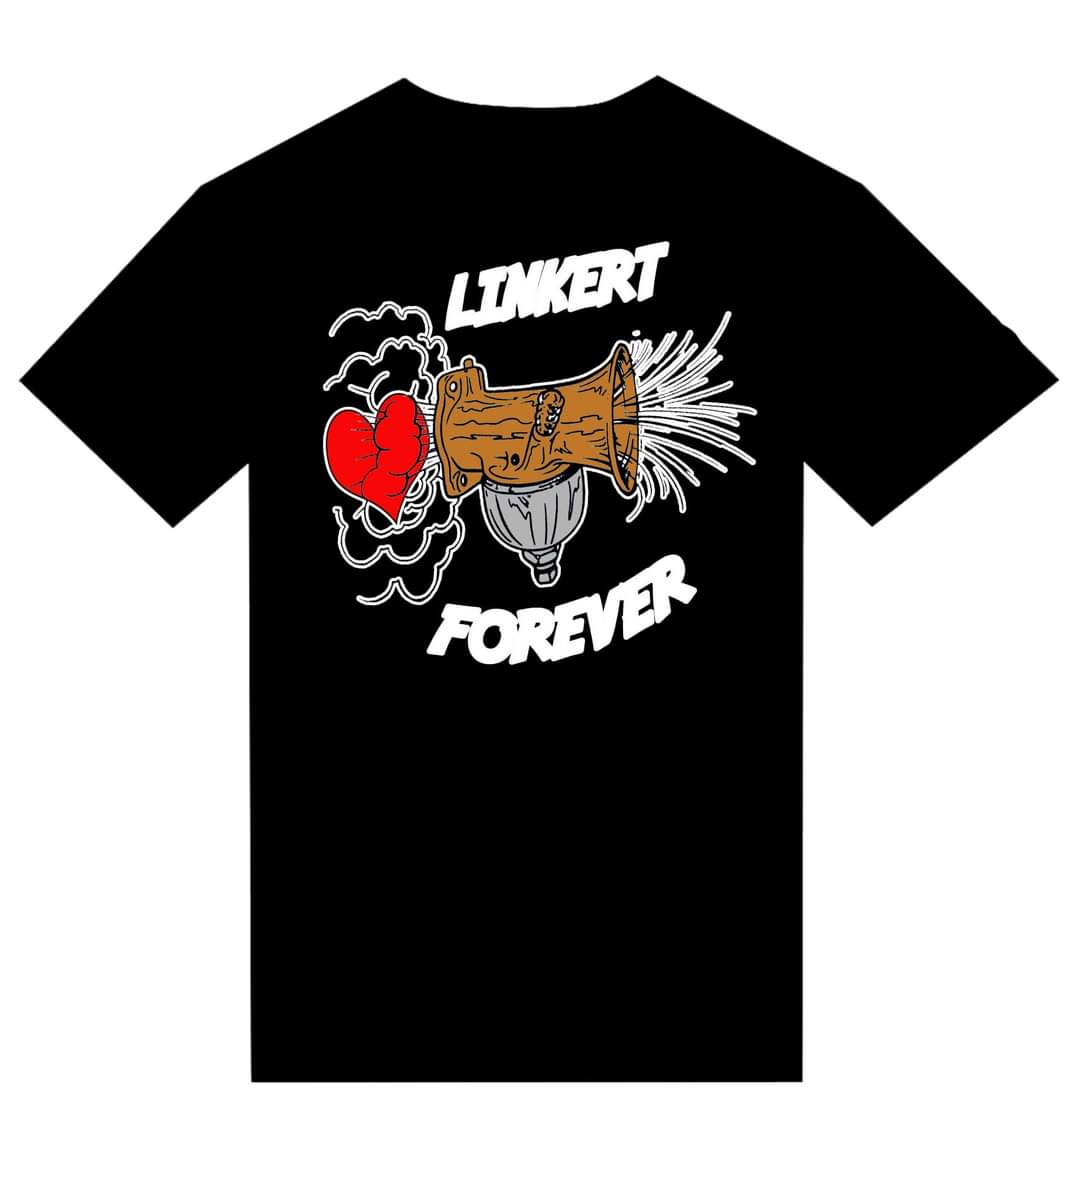 T-shirt "Linkert Forever"